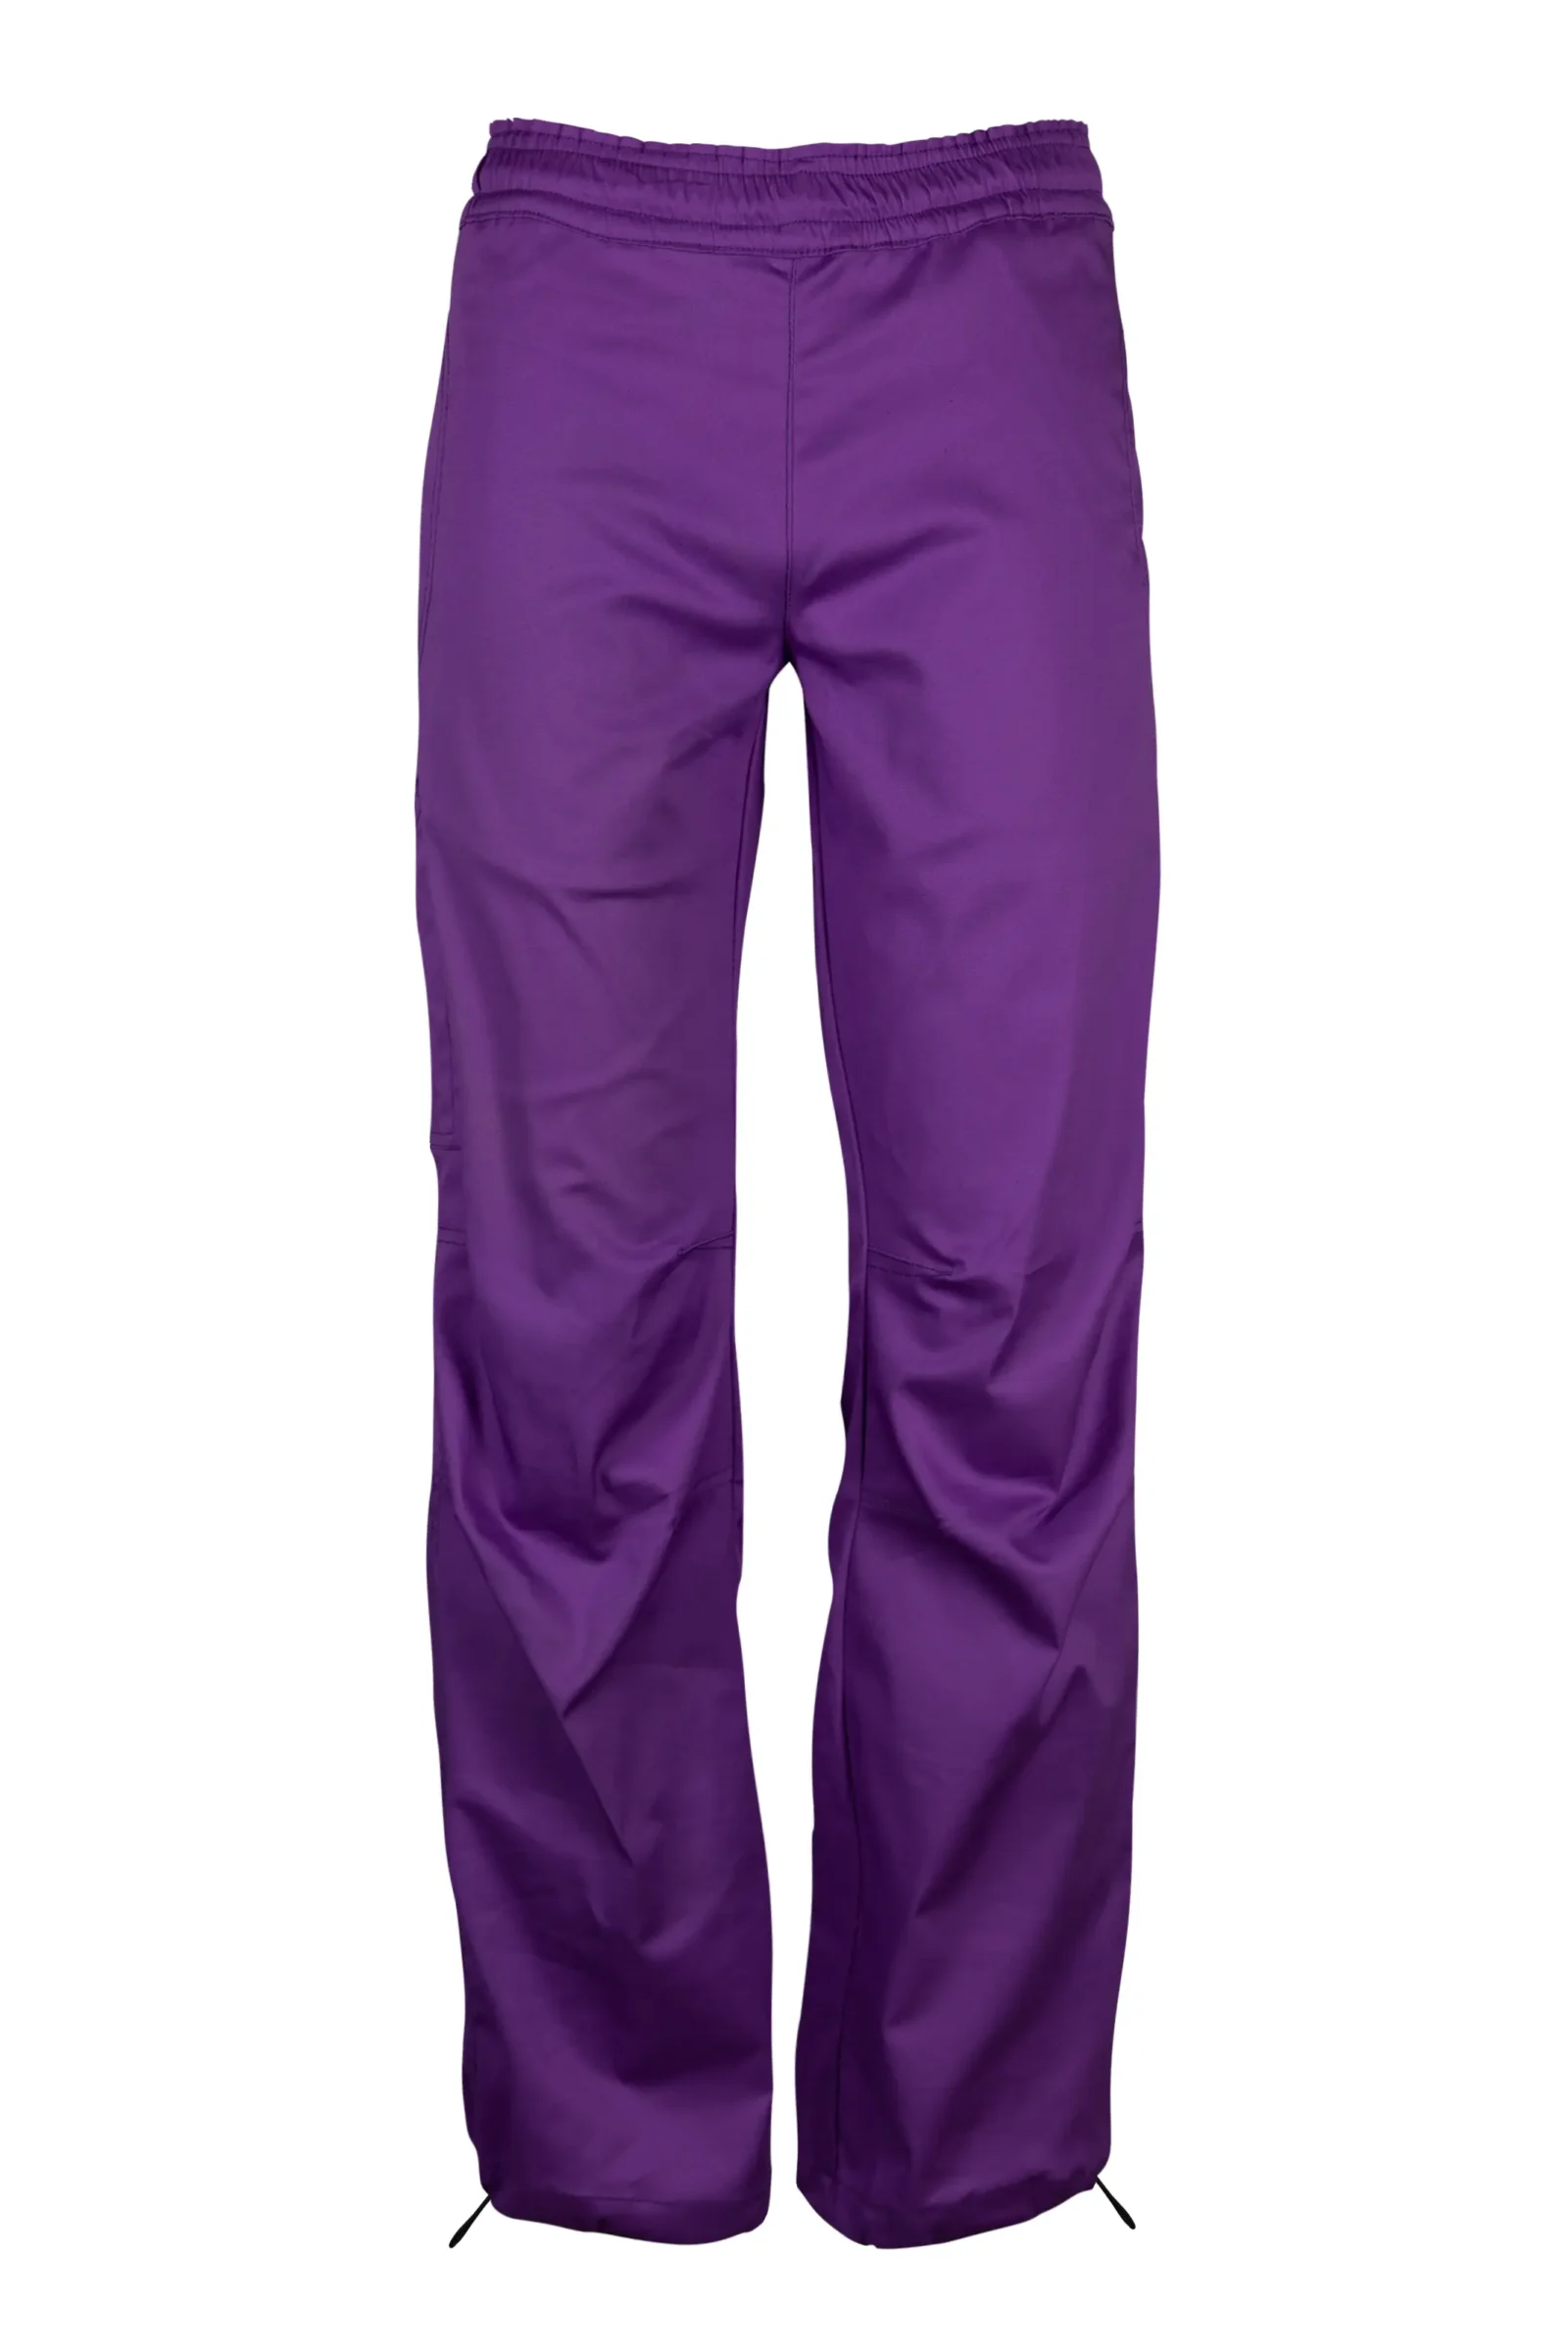 Women's climbing pant - purple cotton - VIOLET MONVIC